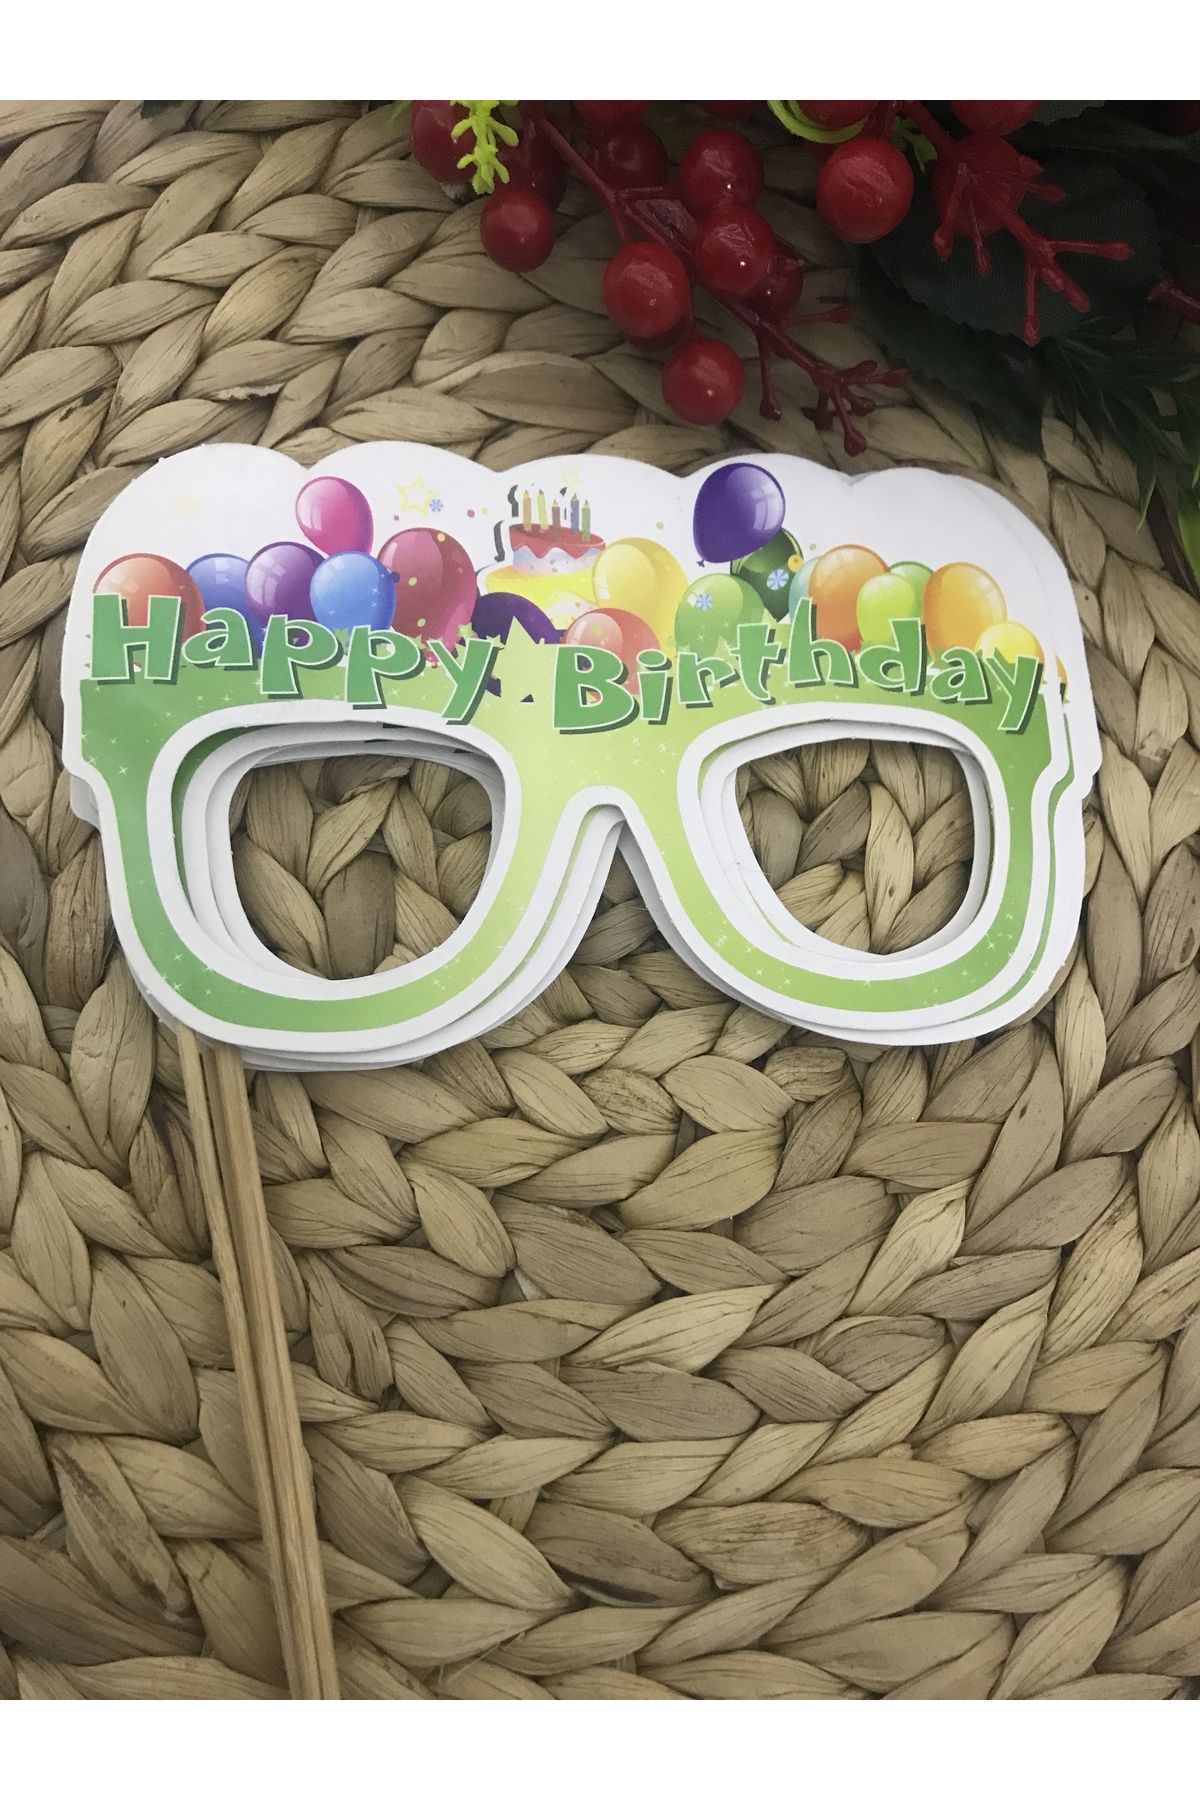 Deniz Party Store Happy Bırthday YEŞİL ... Temalı Gözlük şeklinde Konuşma Balonu 5 adet